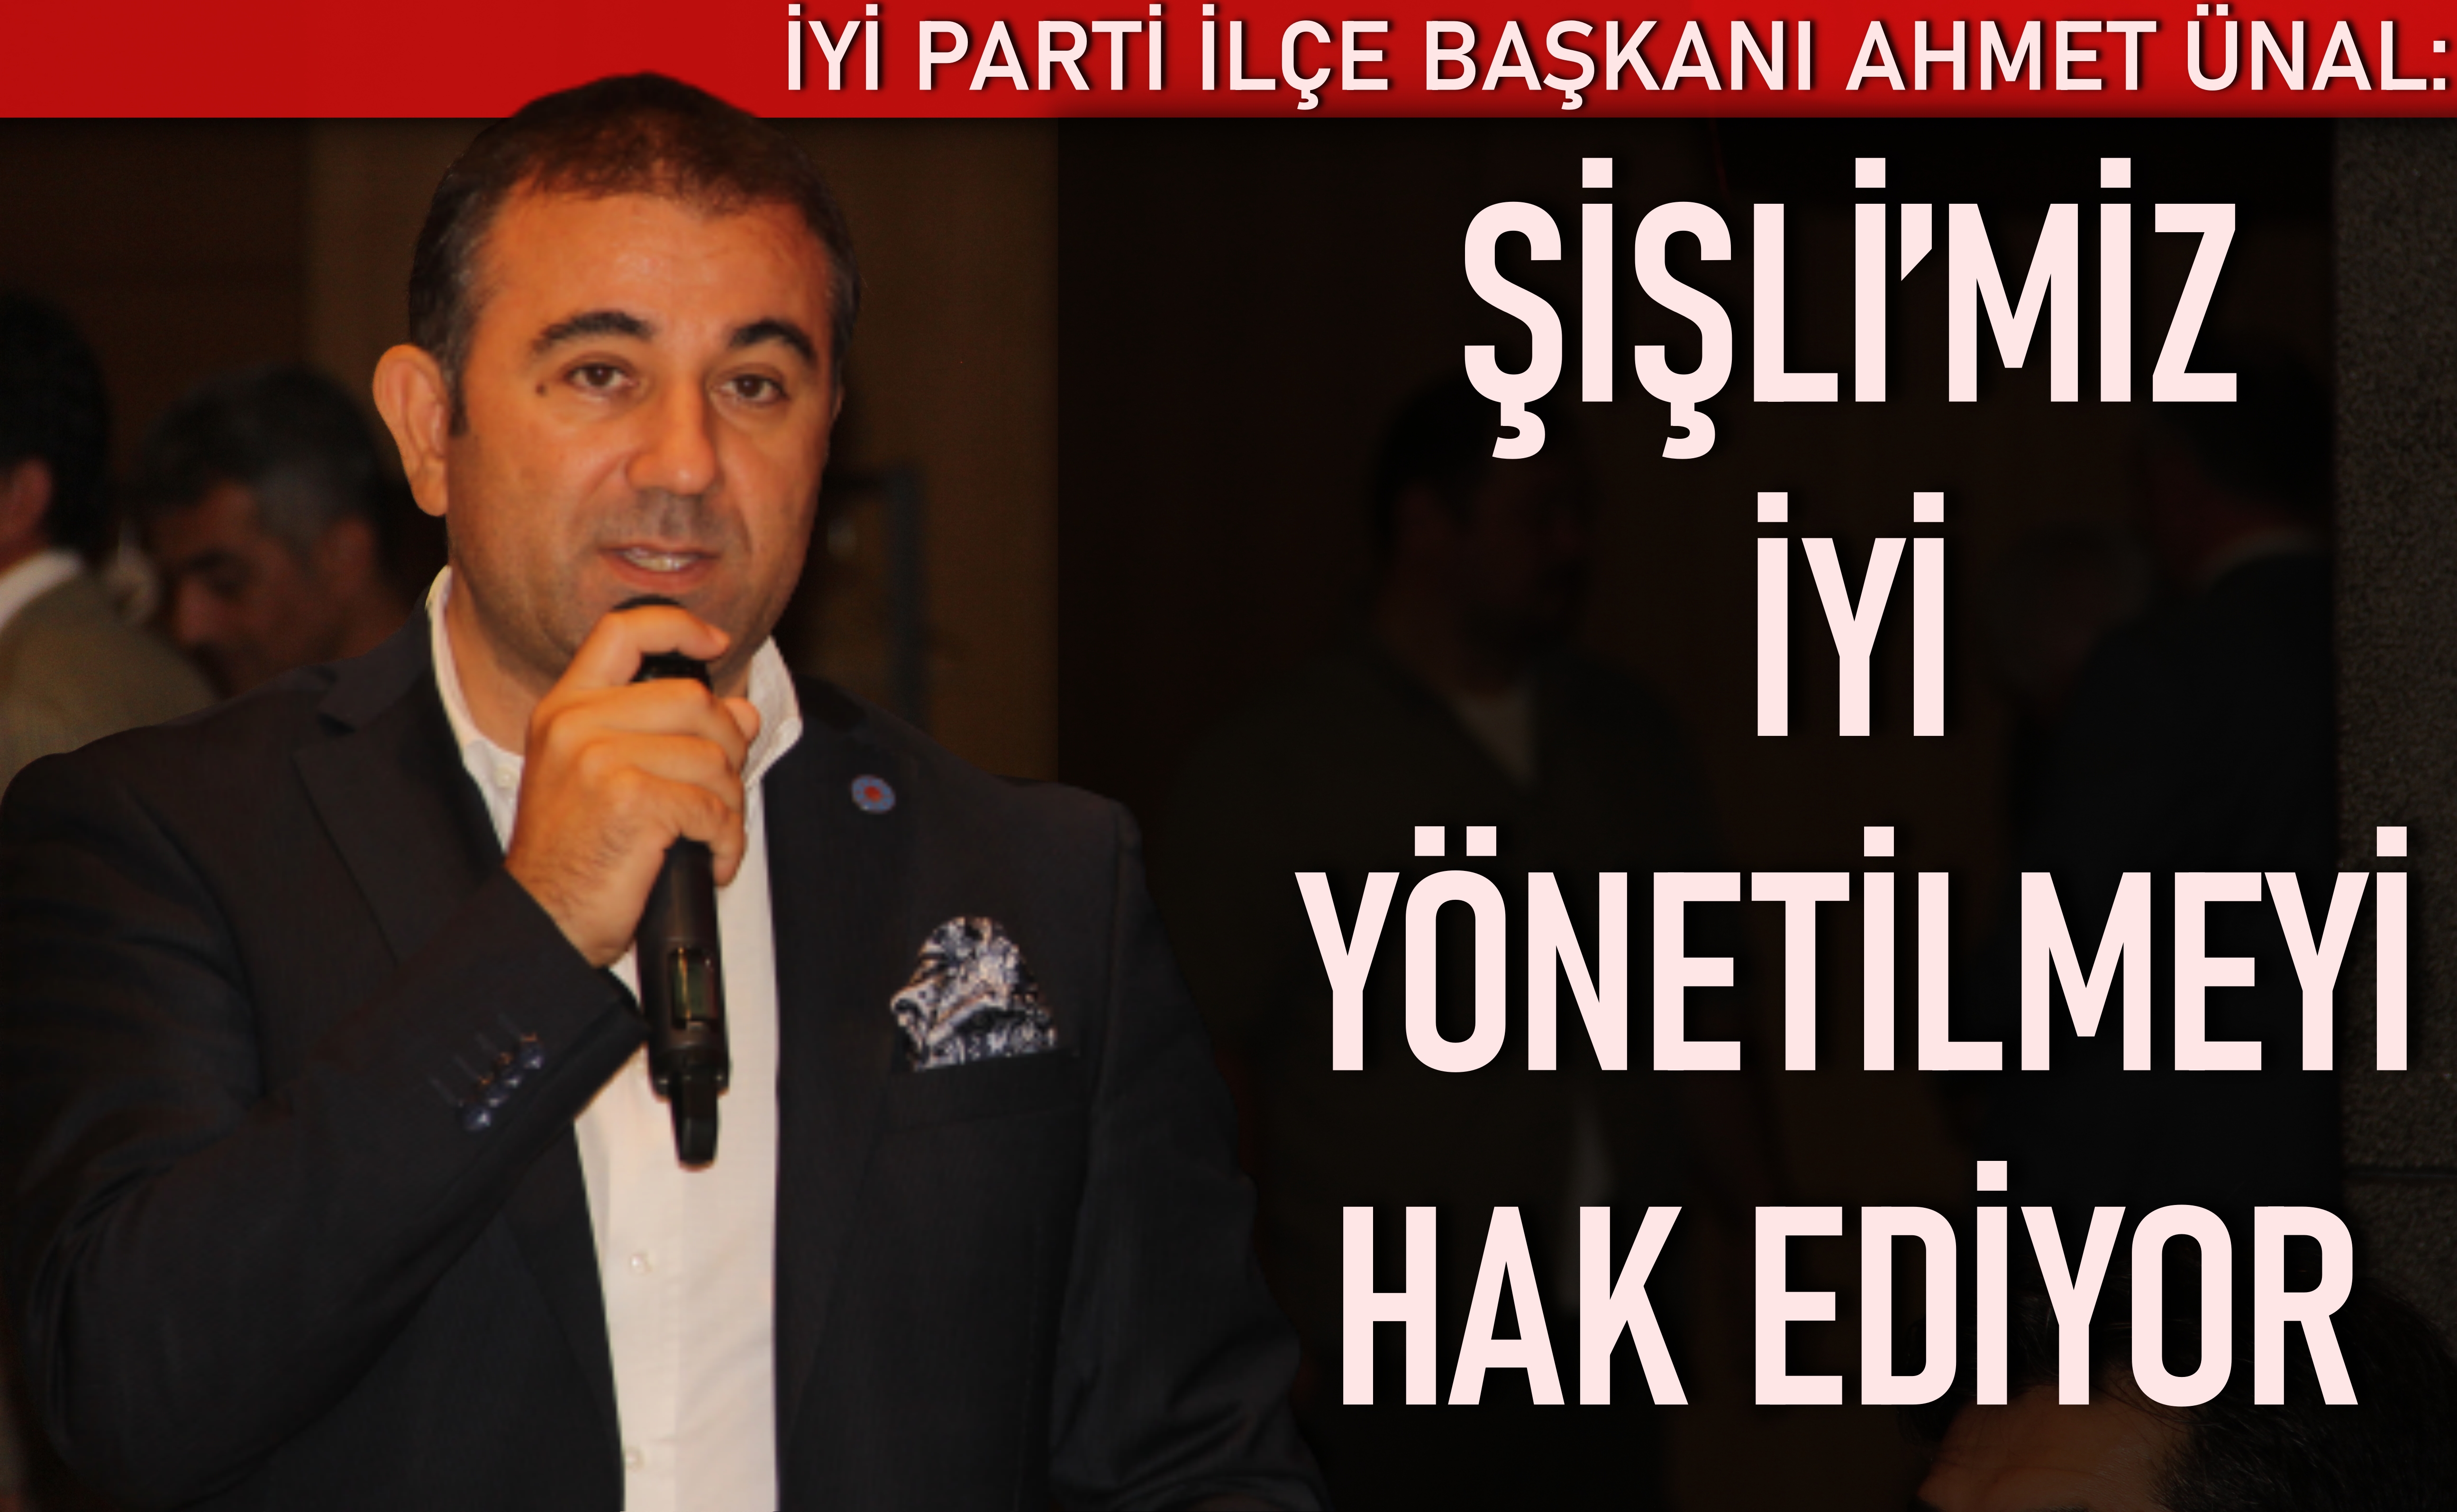 İYİ Parti İlçe Başkanı Ahmet Ünal: Şişli’miz iyi yönetilmeyi hak ediyor